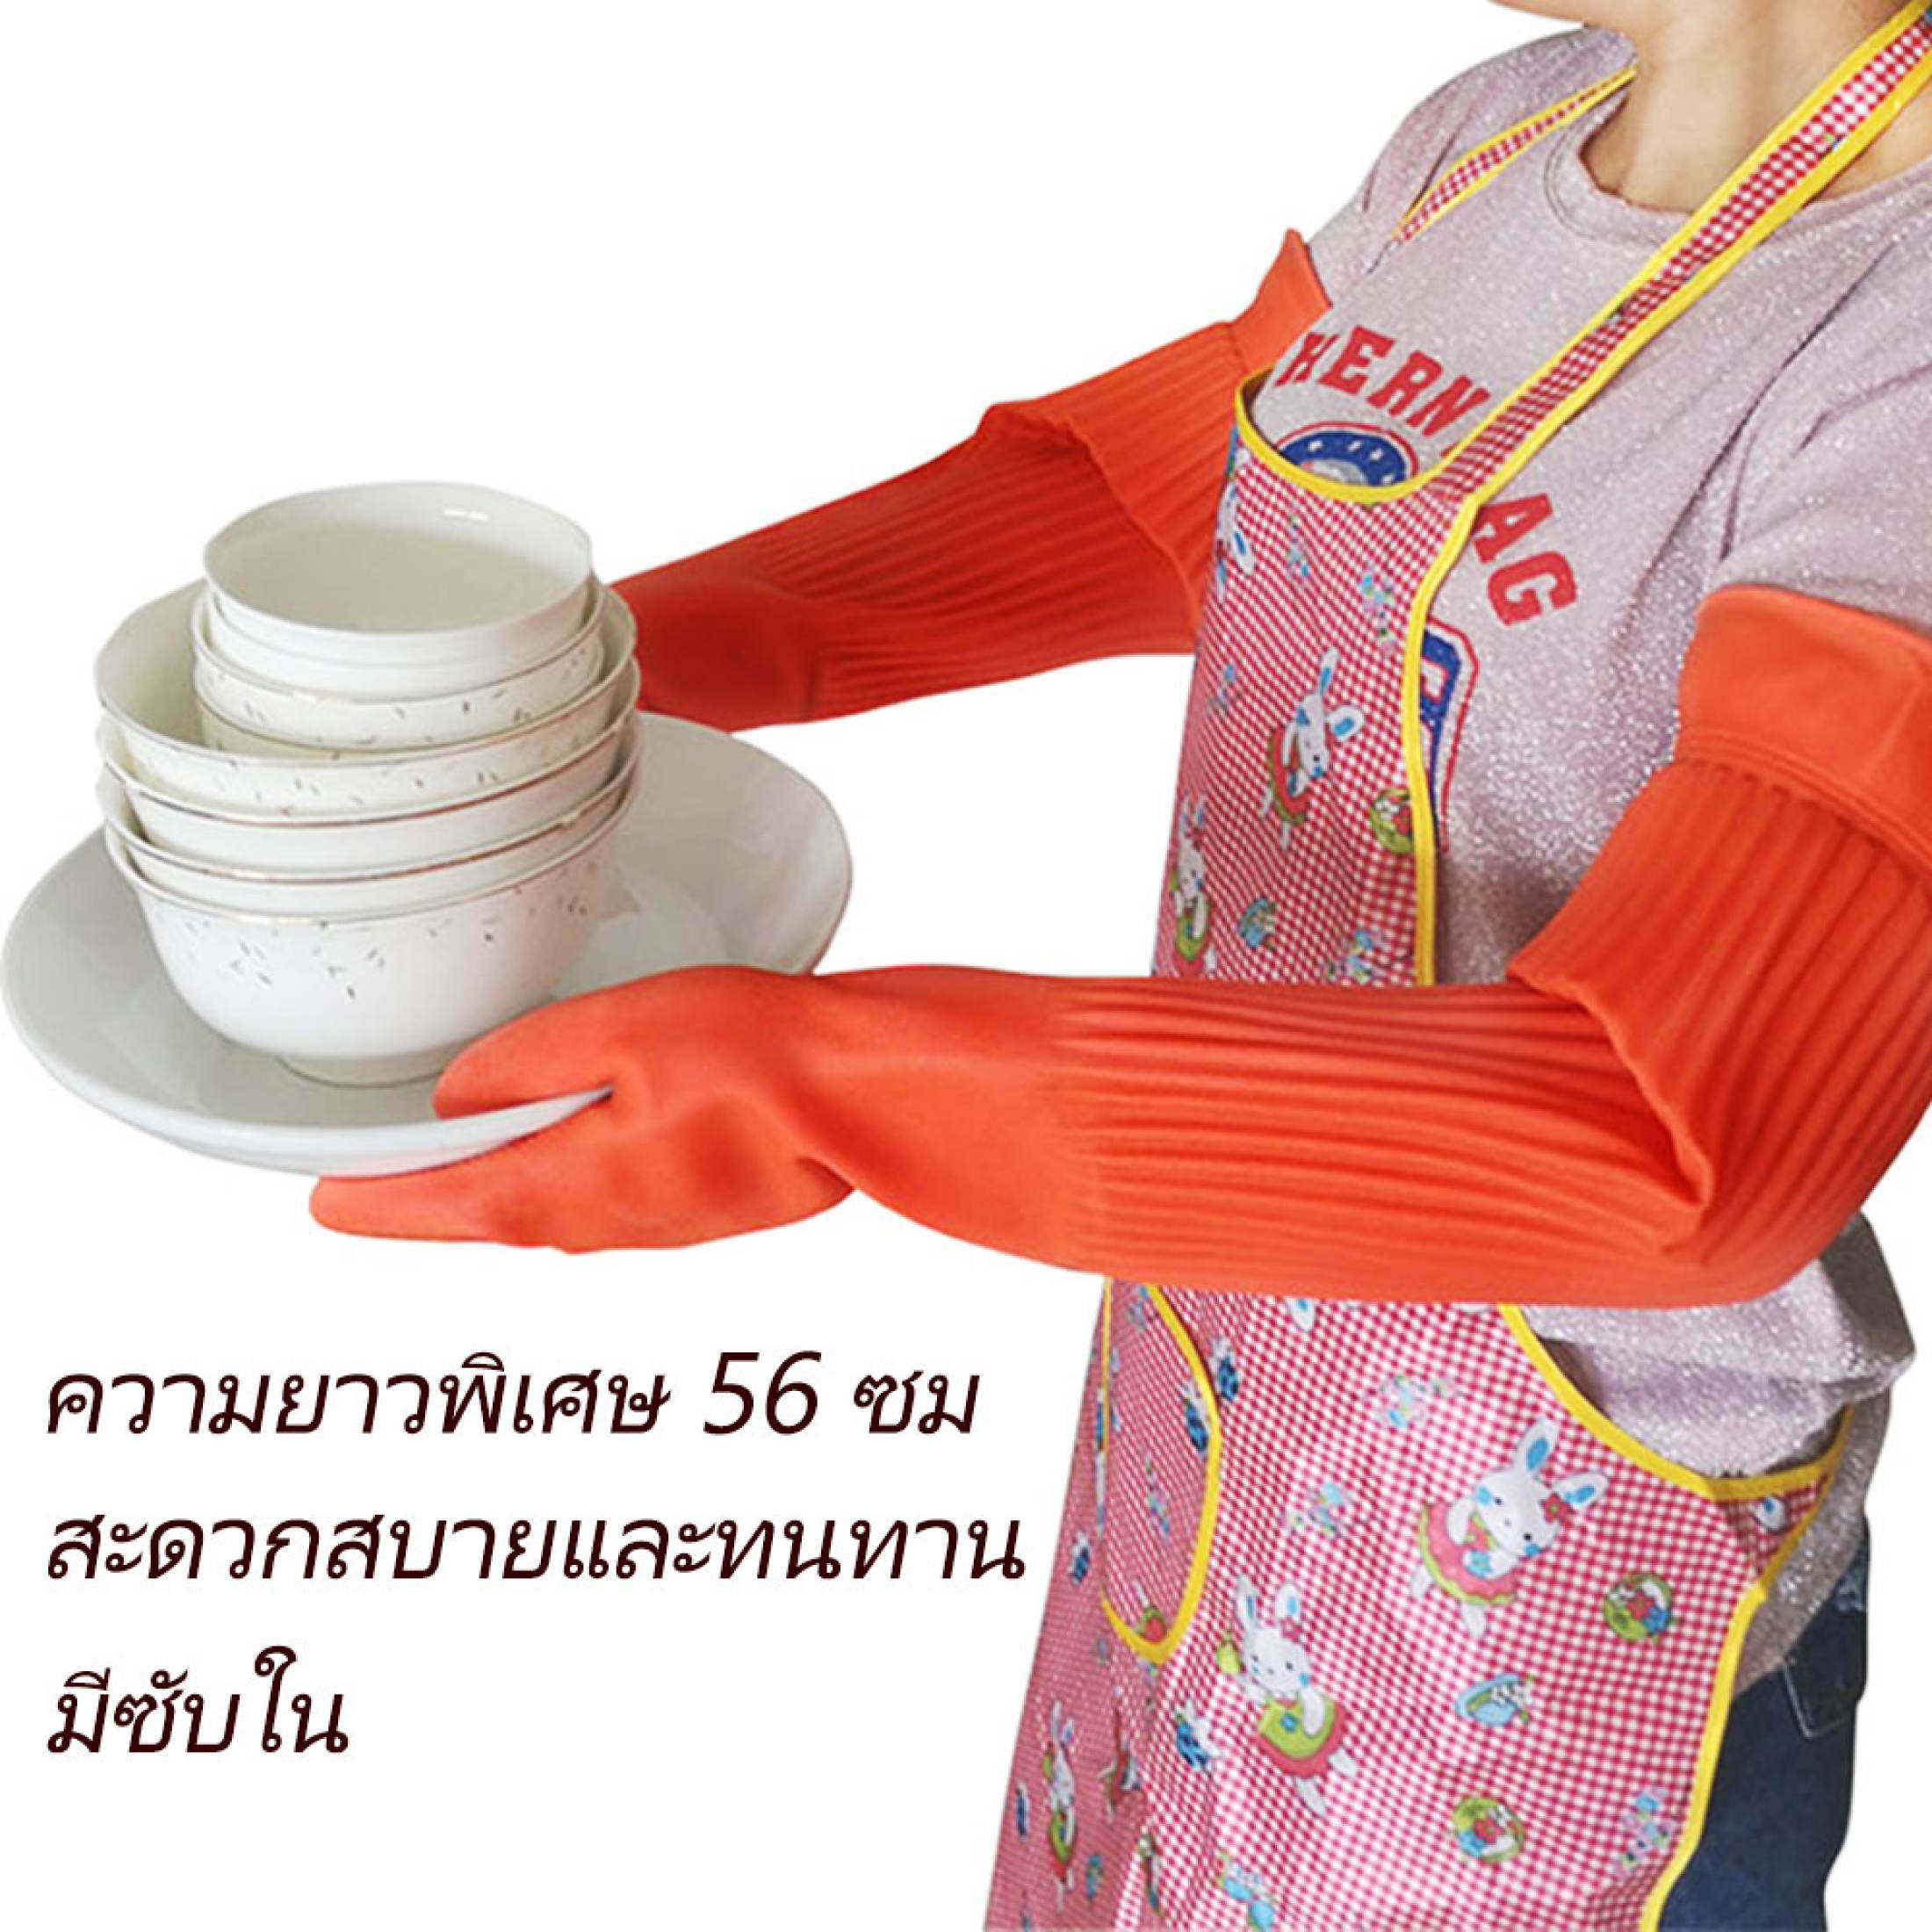 Housework ถุงมือทำความสะอาด ถุงมือล้างจาน ถุงมือกันน้ำ เเบบยาว 56 ซม ถุงมือยาง ถุงมือล้างจานทำความสะอาด ถุงมือยาวยืดหยุ่นกันน้ำ